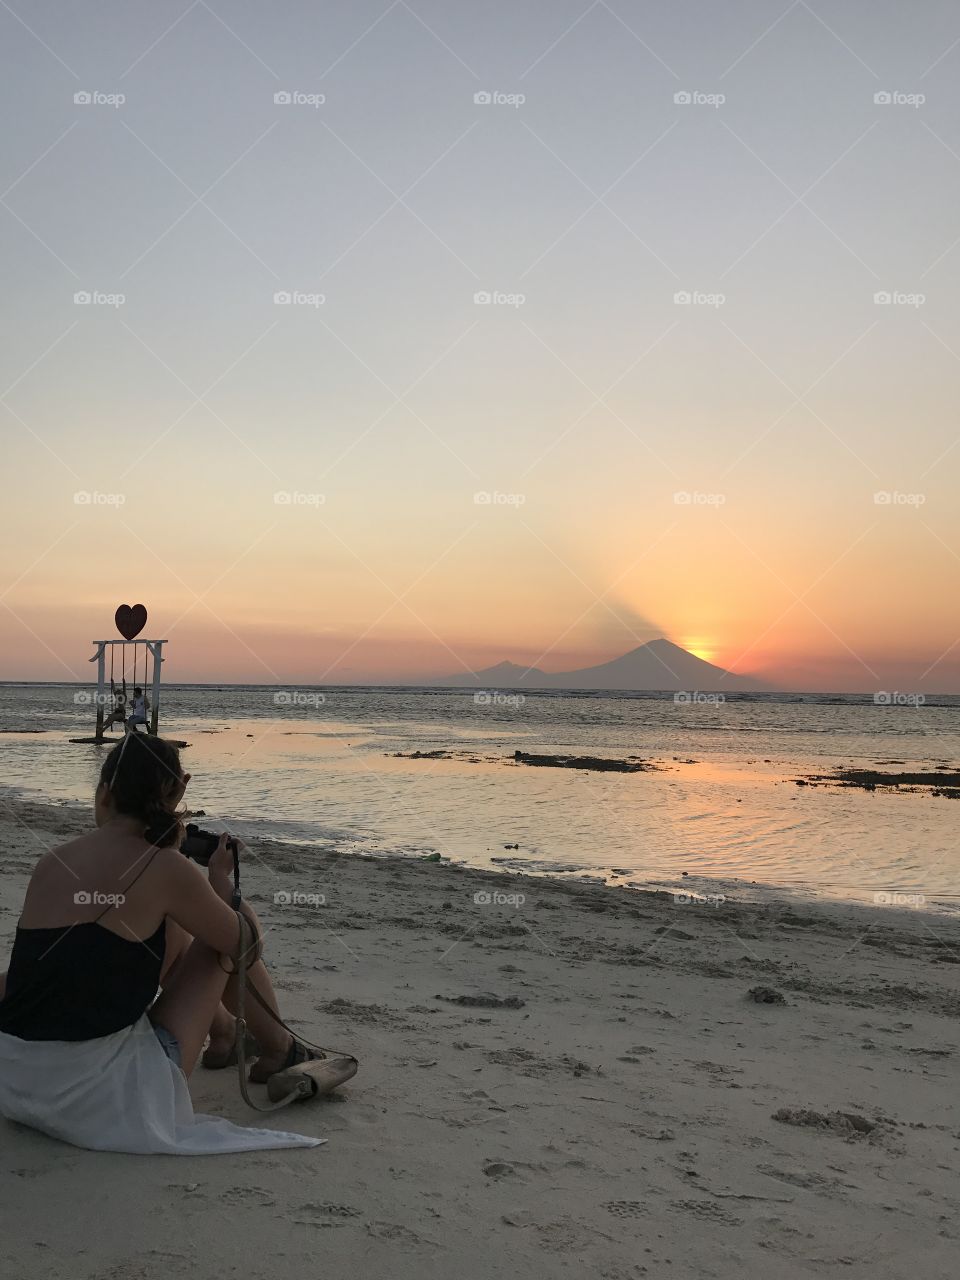 Sunset at Gili Meno, Bali